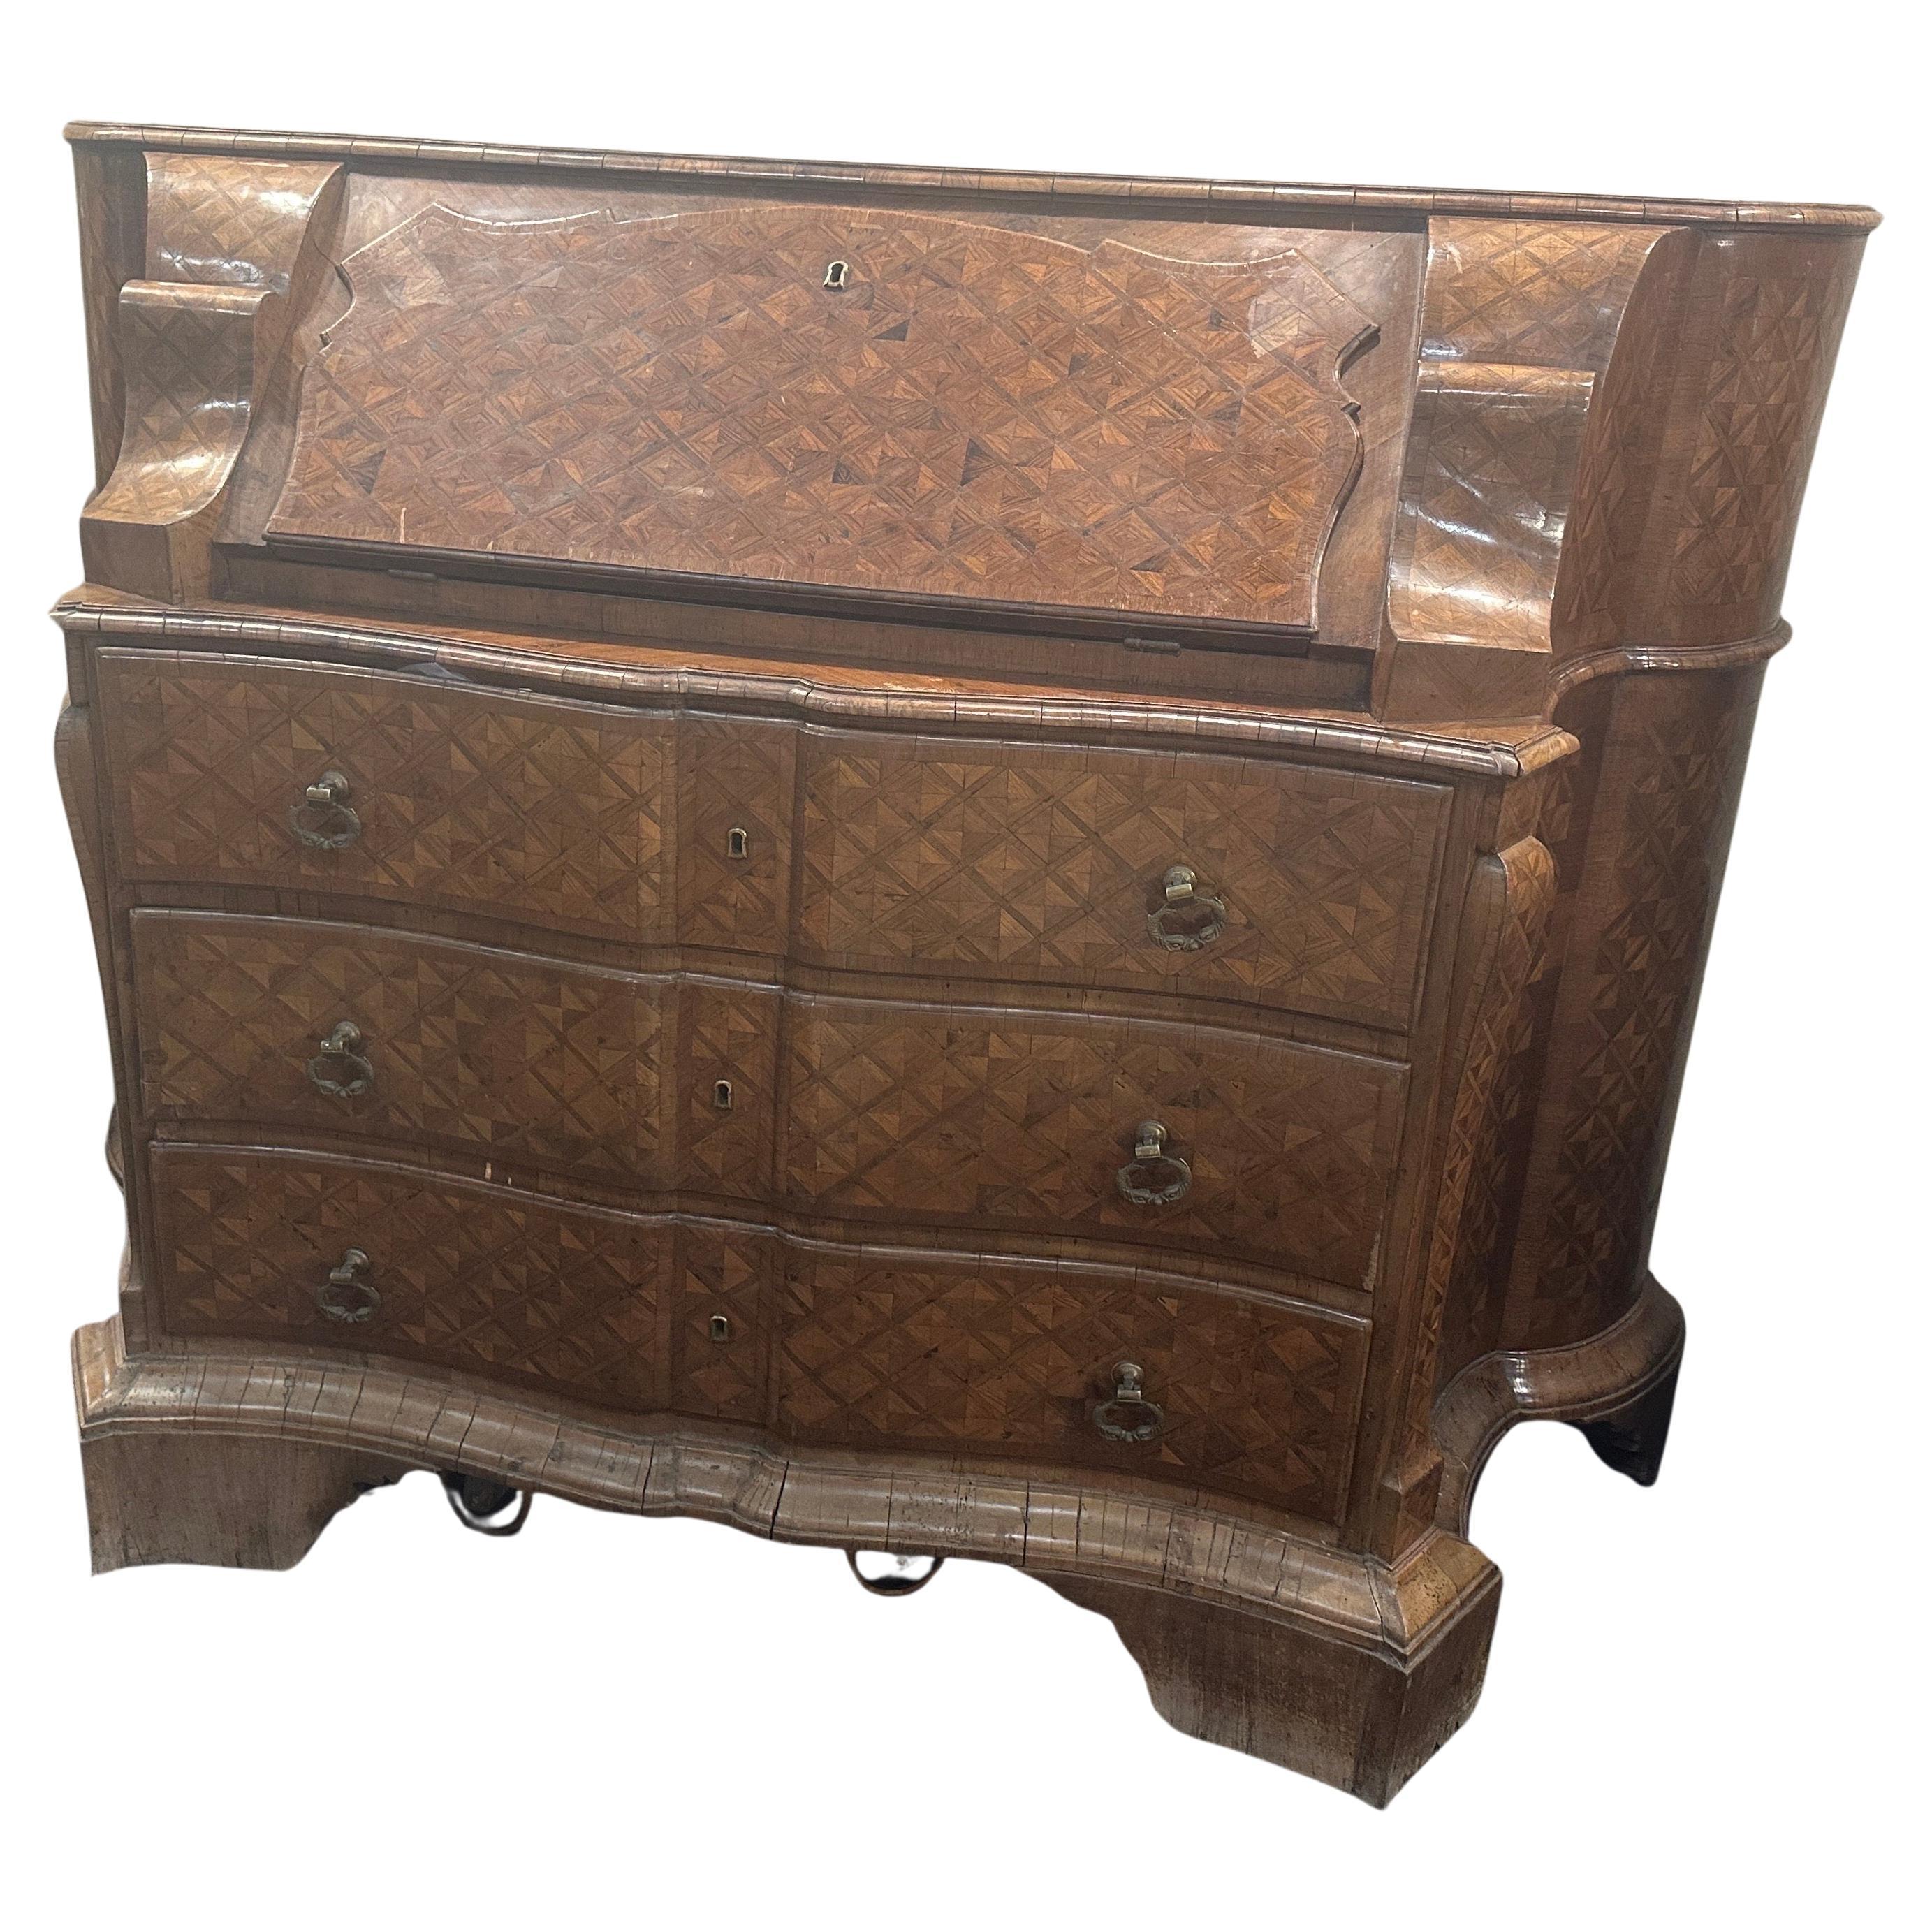 Ein Louis XV Klappe Kommode mit Schubladen und Geheimnisse handgeschnitzt und Intarsien Holz im zweiten Teil des 18. Jahrhunderts in Rom. Die Möbel sind im Originalzustand mit Gebrauchs- und Altersspuren, unsere Arbeitsphilosophie ist es nicht,